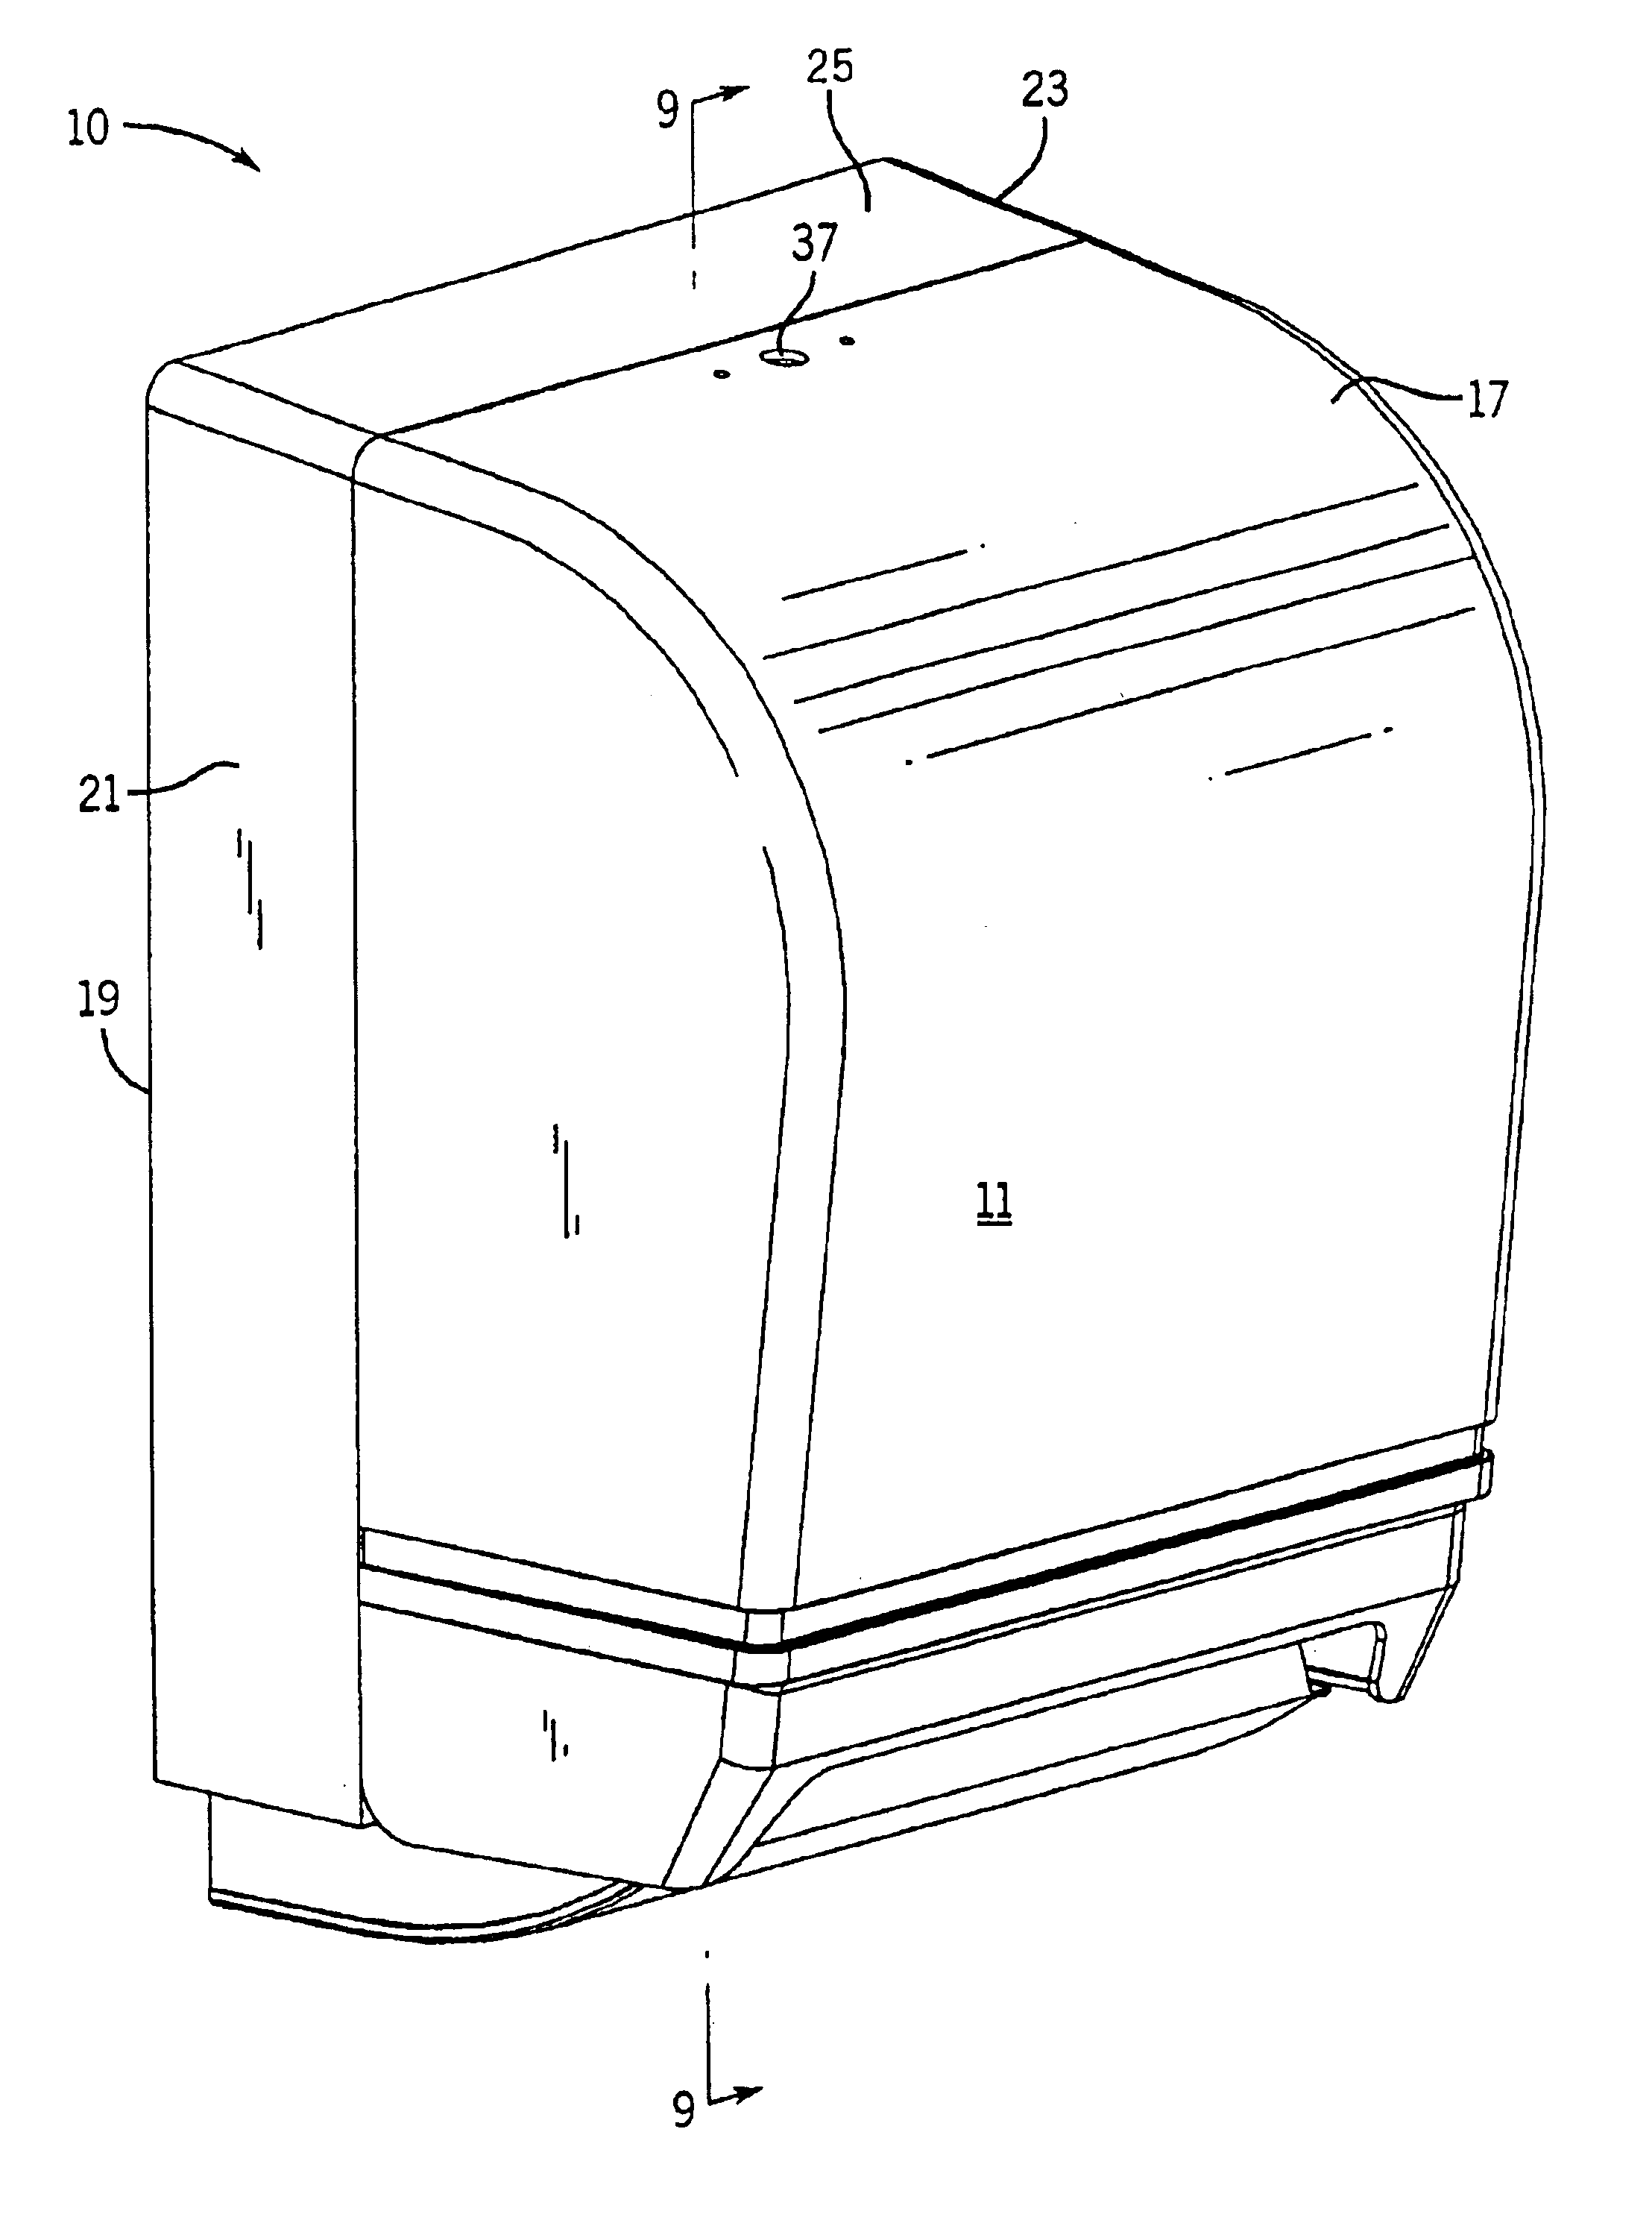 Automatic dispenser apparatus